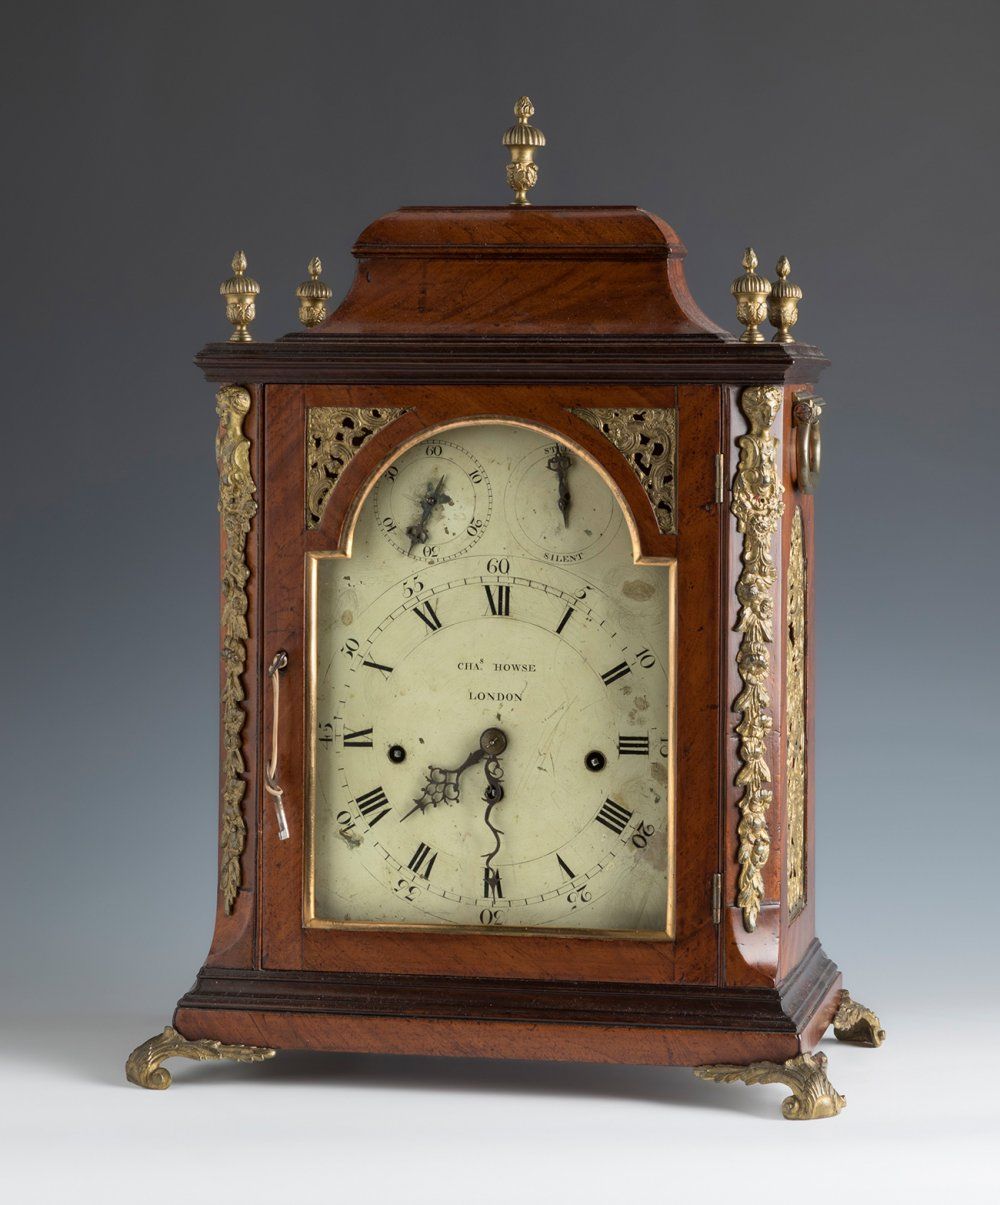 Null CHA HOWSE 支架钟。伦敦，18世纪。
桃花心木和凿刻的青铜。
刻钟、半钟和小时钟。9个钟。
钥匙不见了。
机器需要大修。表盘上的珐琅彩有缺陷。&hellip;